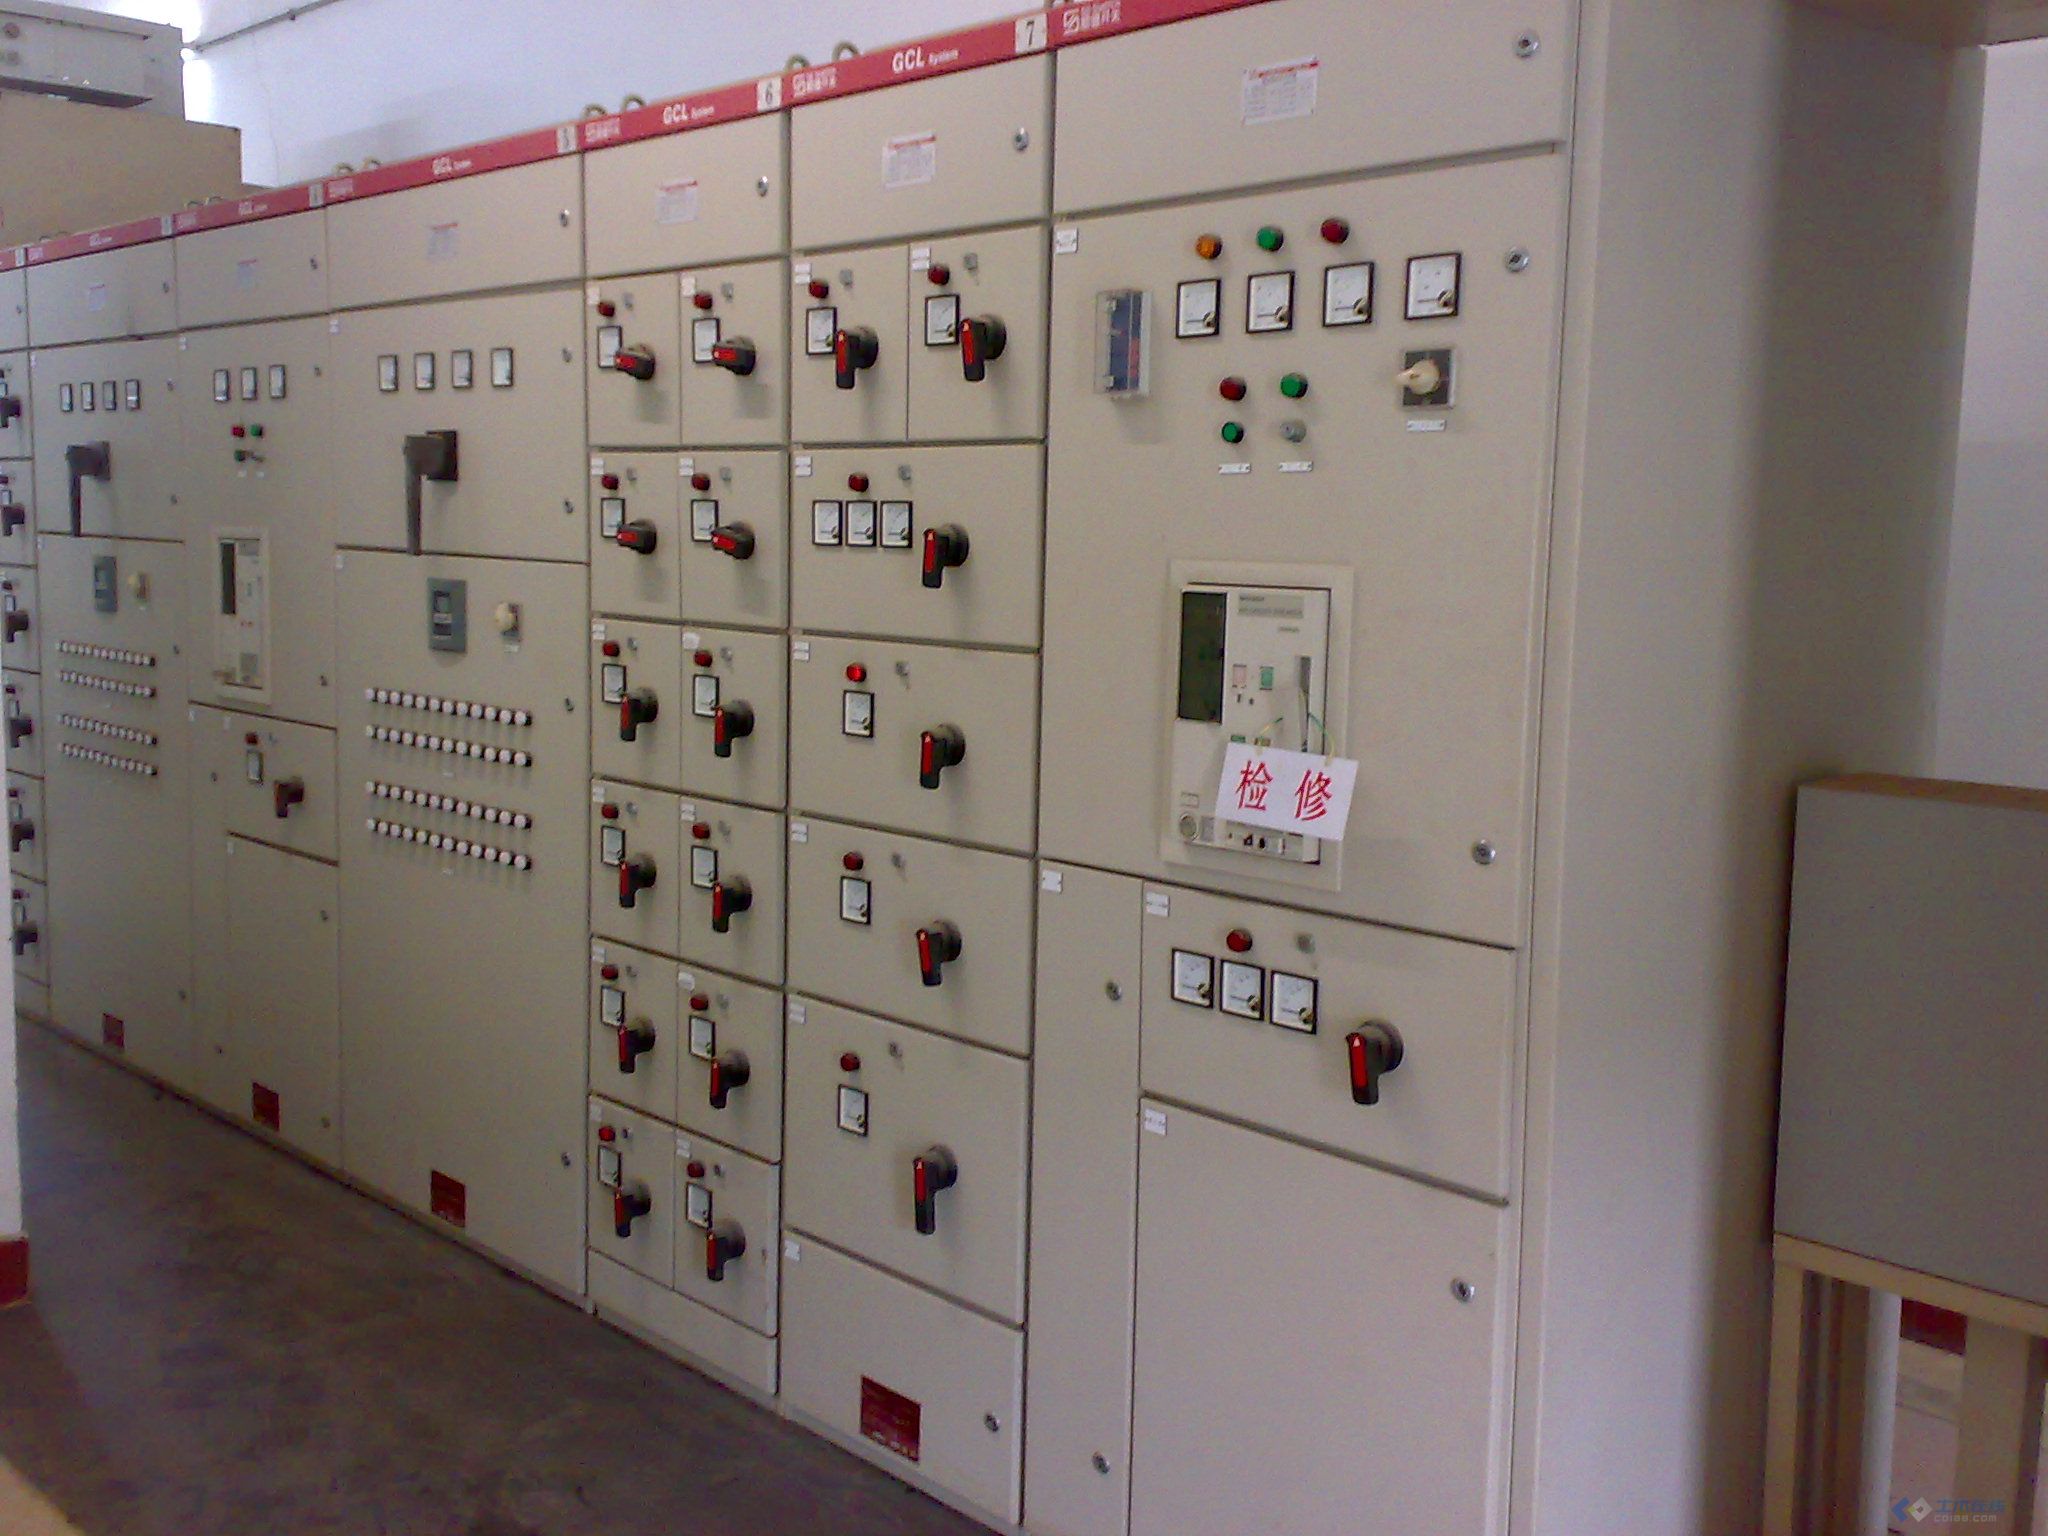 江门台山配电柜回收/箱式变压器回收/均可看货处理